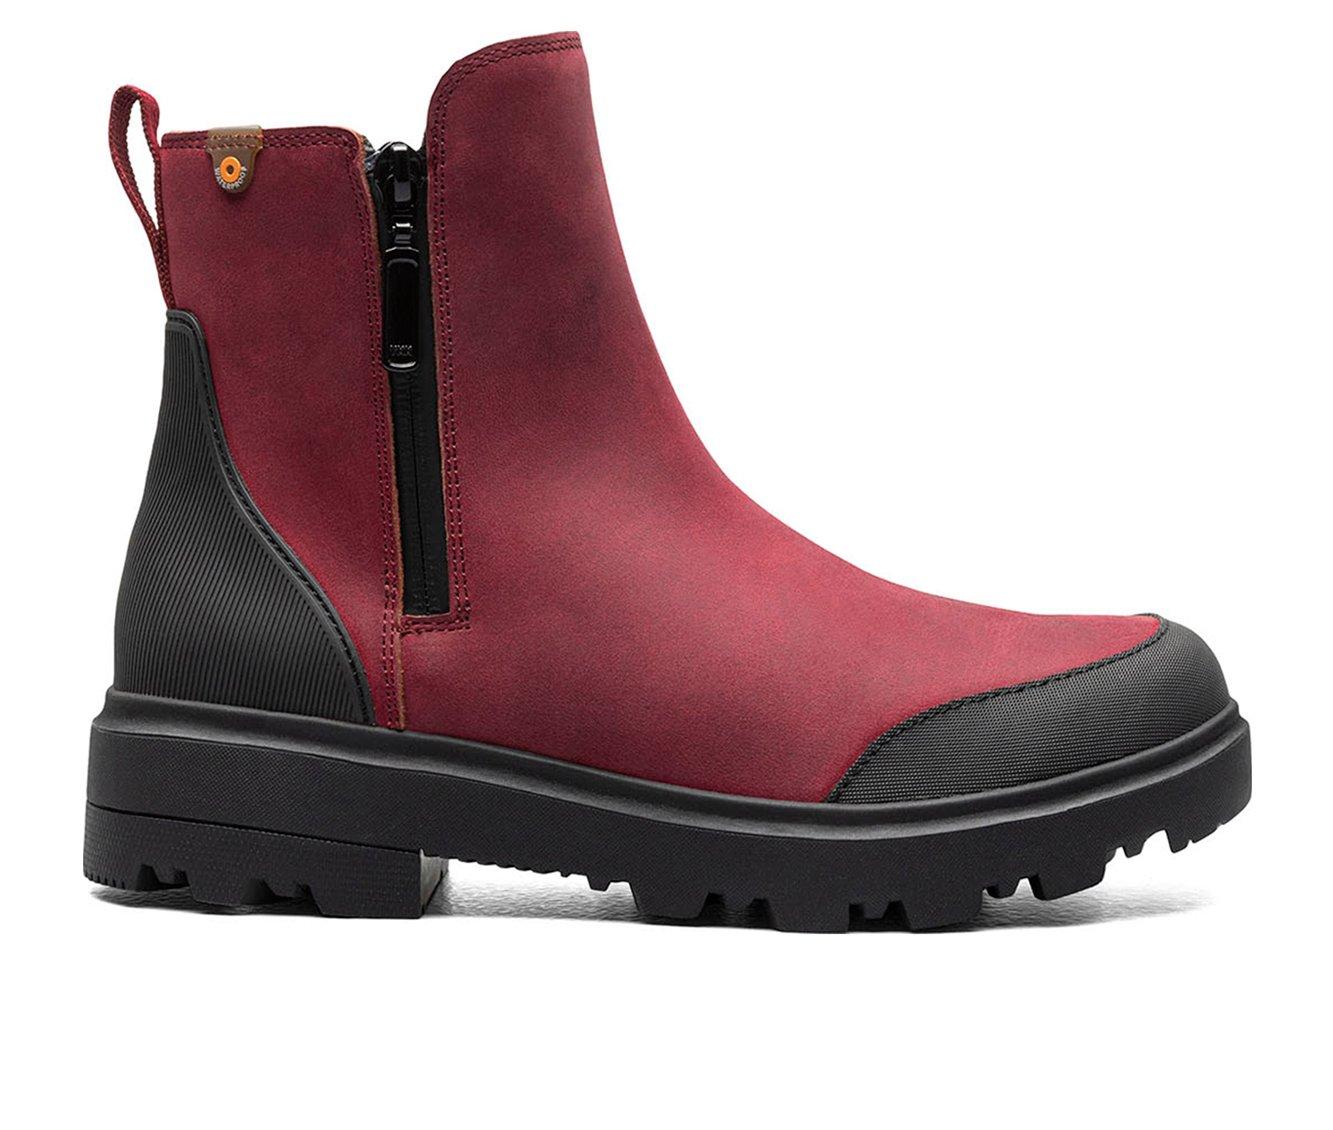 Women's Bogs Footwear Holly Zip Leather Winter Boots